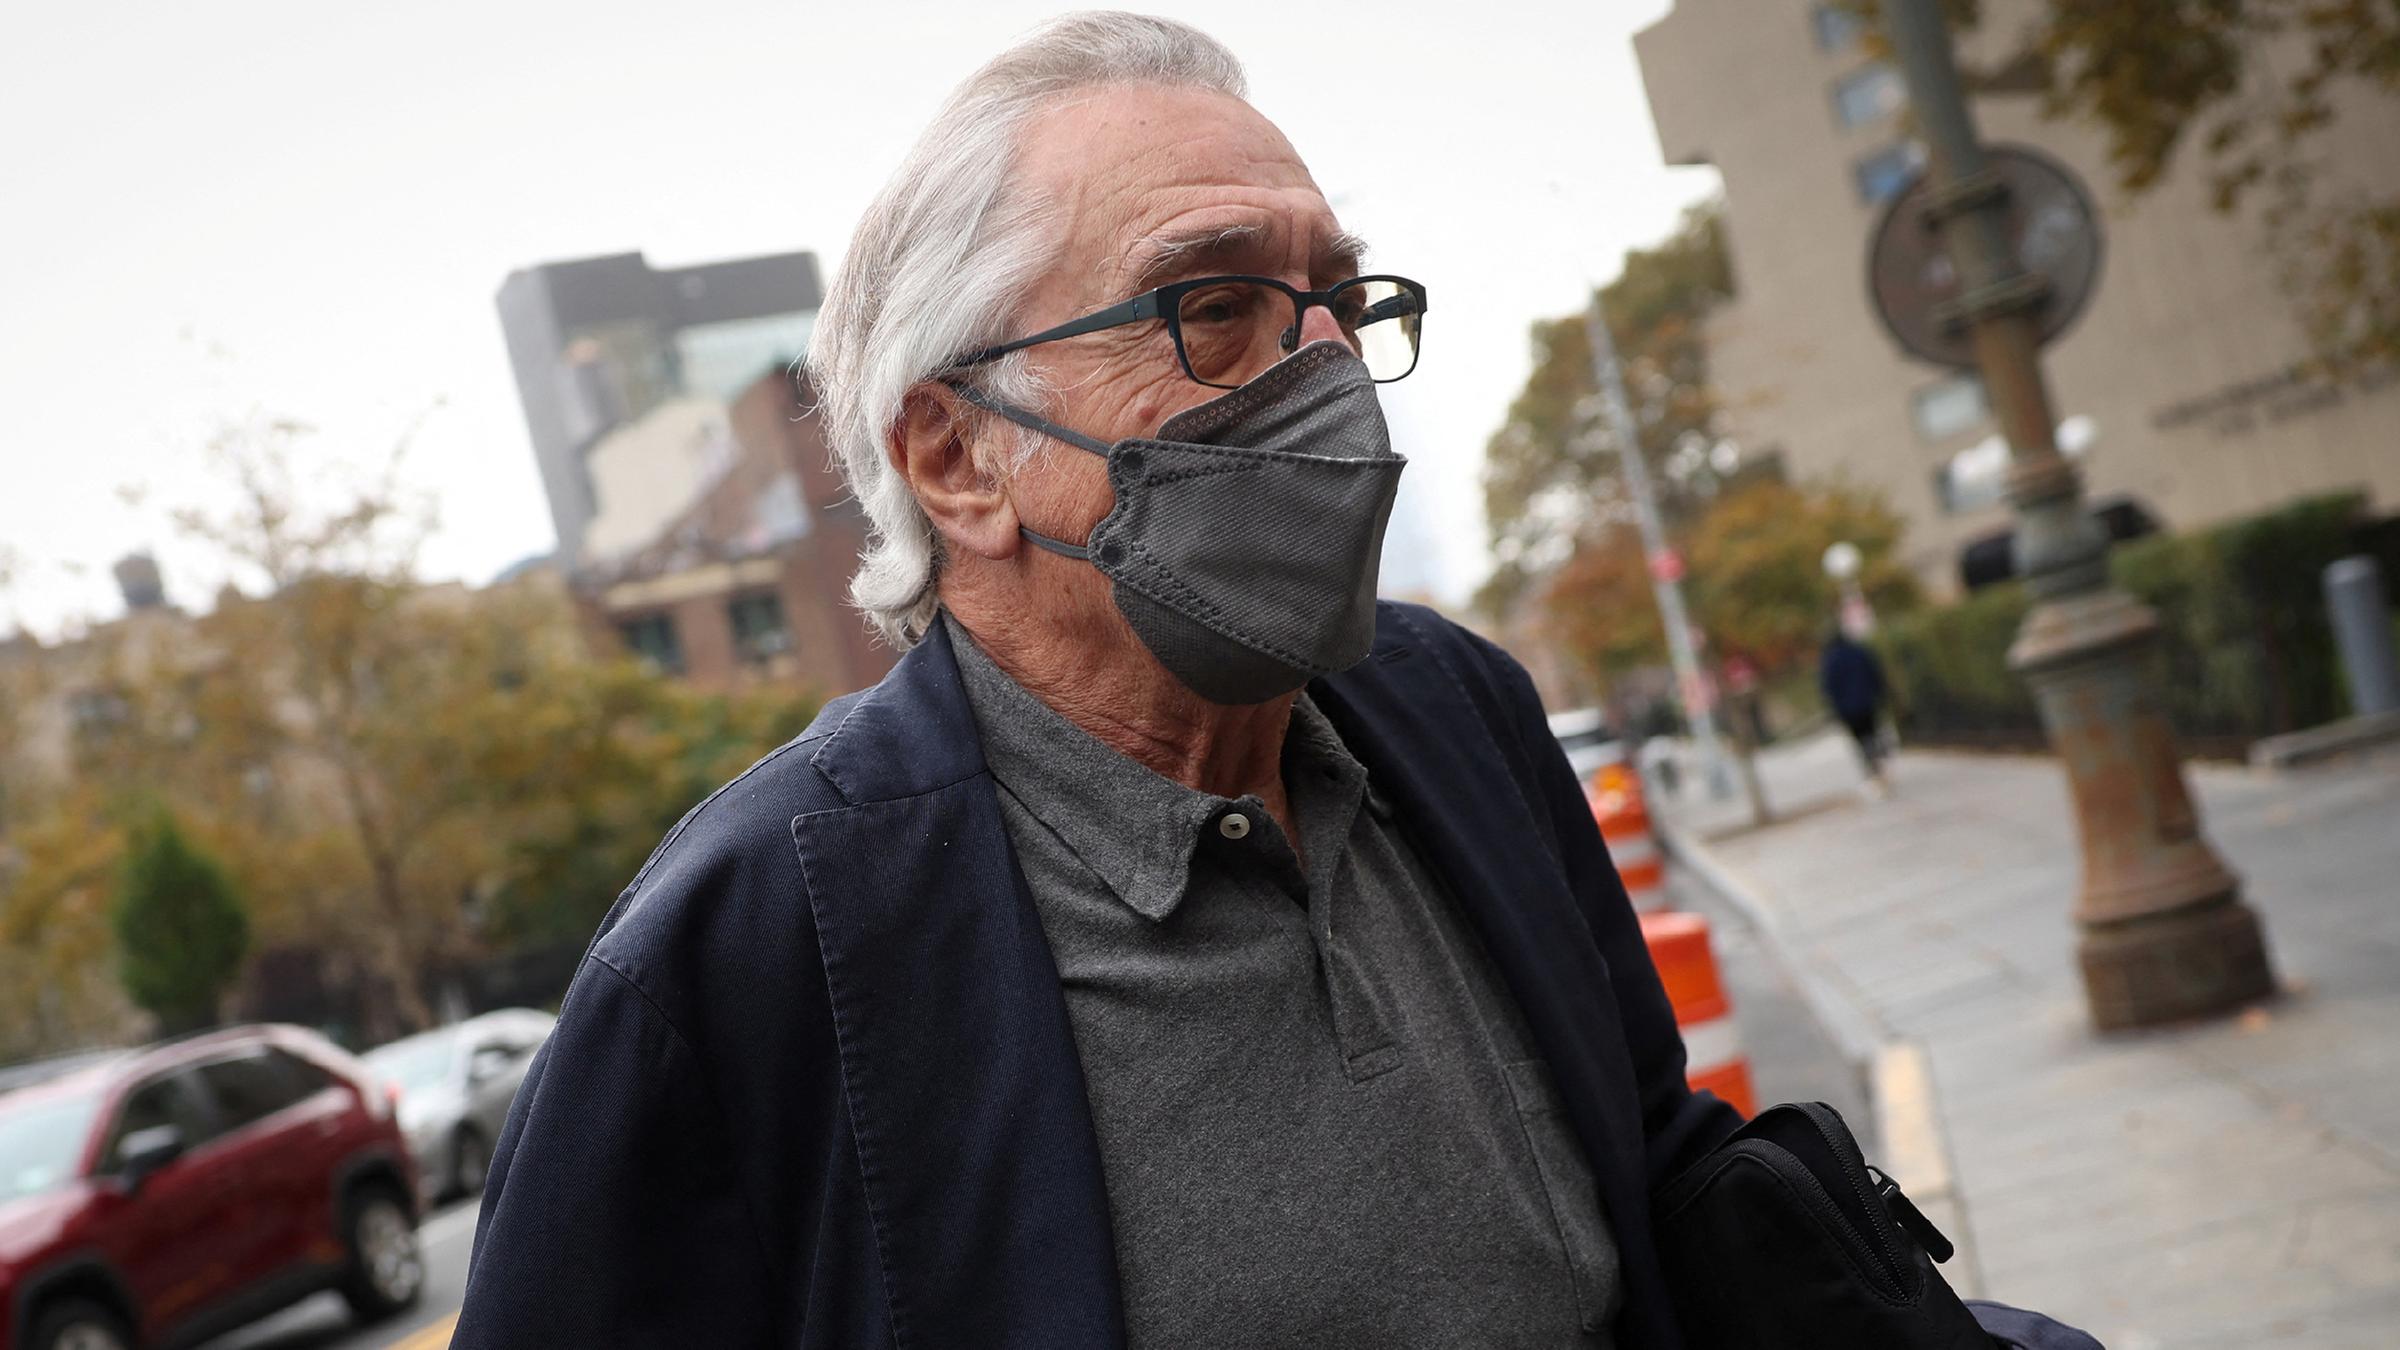 Schauspieler Robert De Niro mit grauer Mund-Nasen-Bedeckung auf dem Weg zu einem New Yorker Gericht